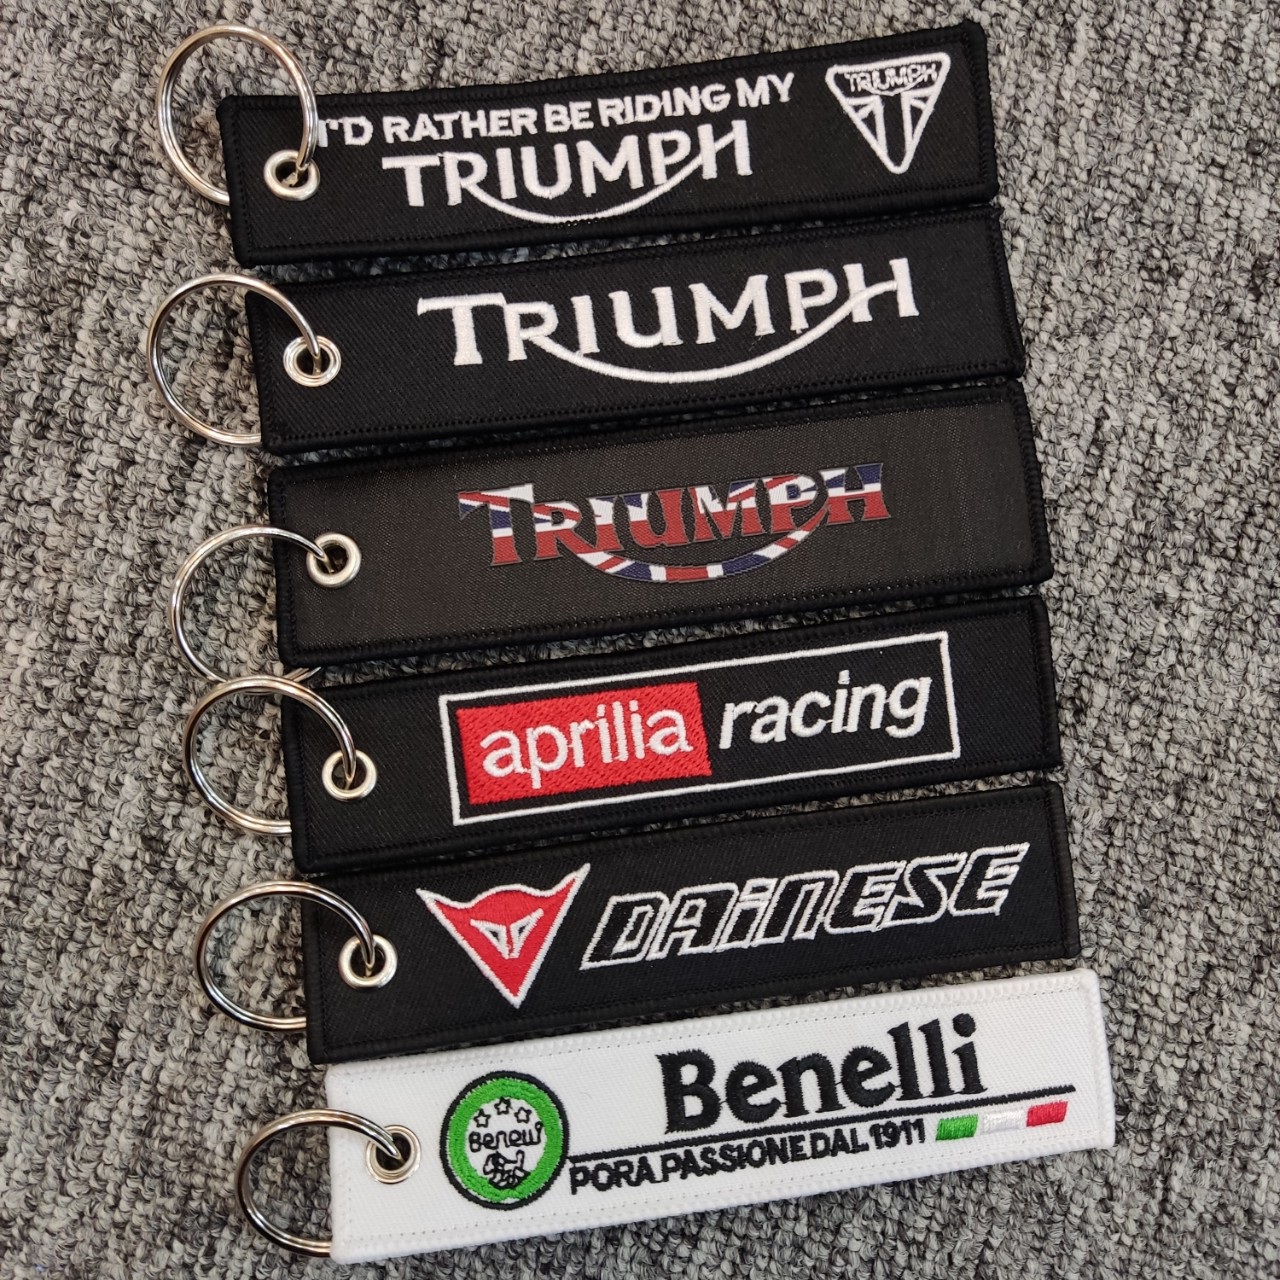 Móc chìa khóa vải hình thêu chữ Triumph Dainese Benelli 13x3cm